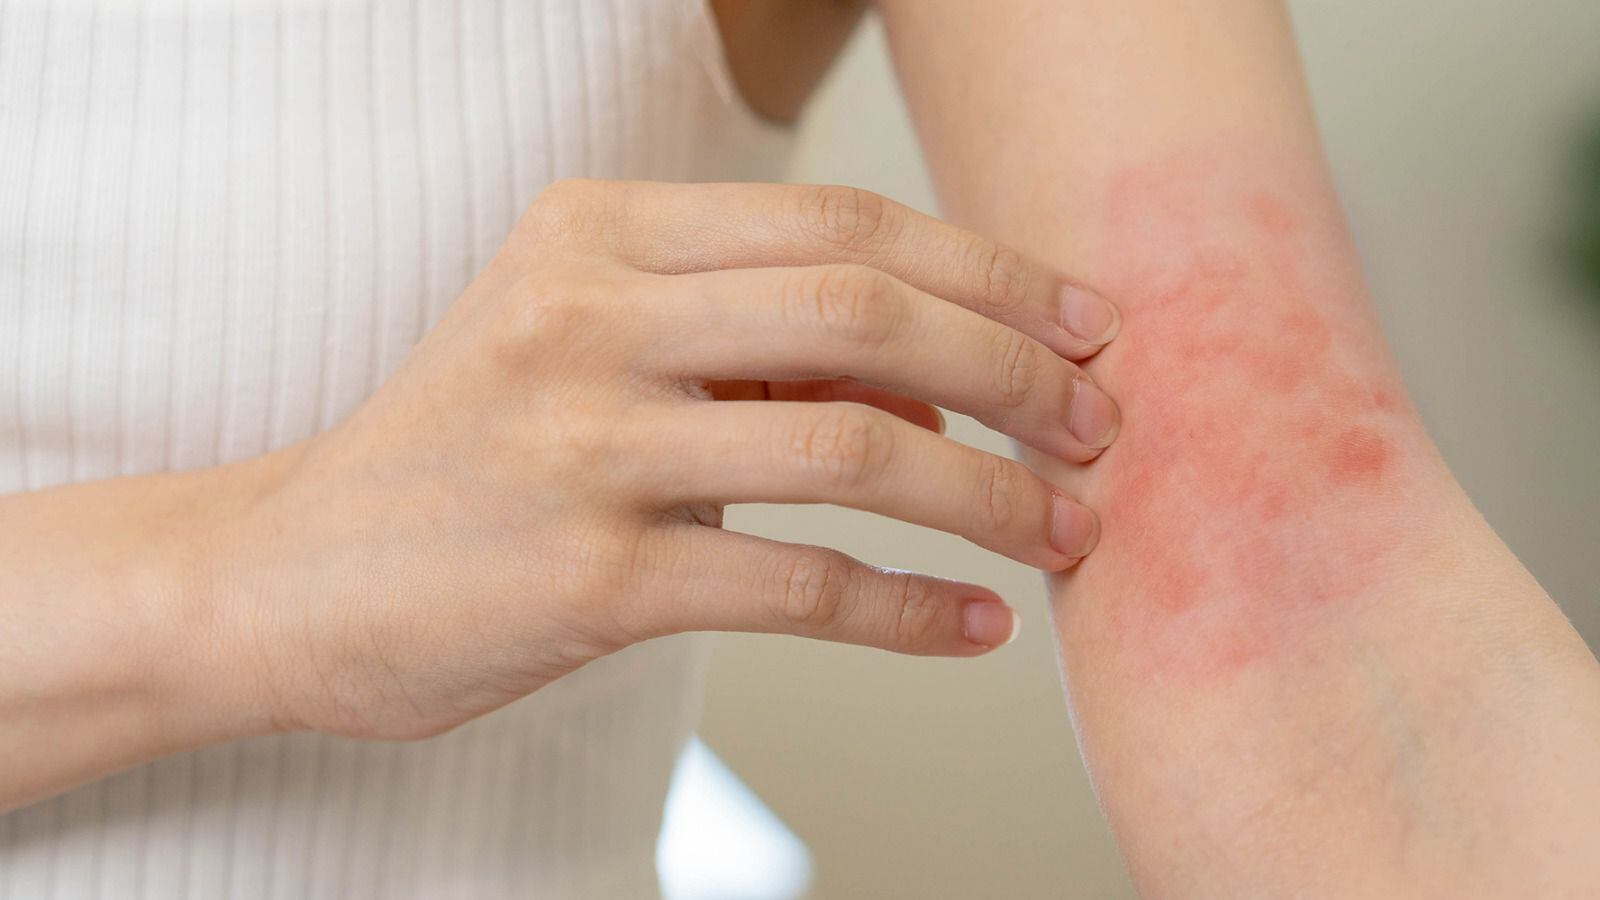 El síndrome de Stevens-Johnson causa sarpullido en la piel y otras partes del cuerpo. (Foto: Shutterstock)